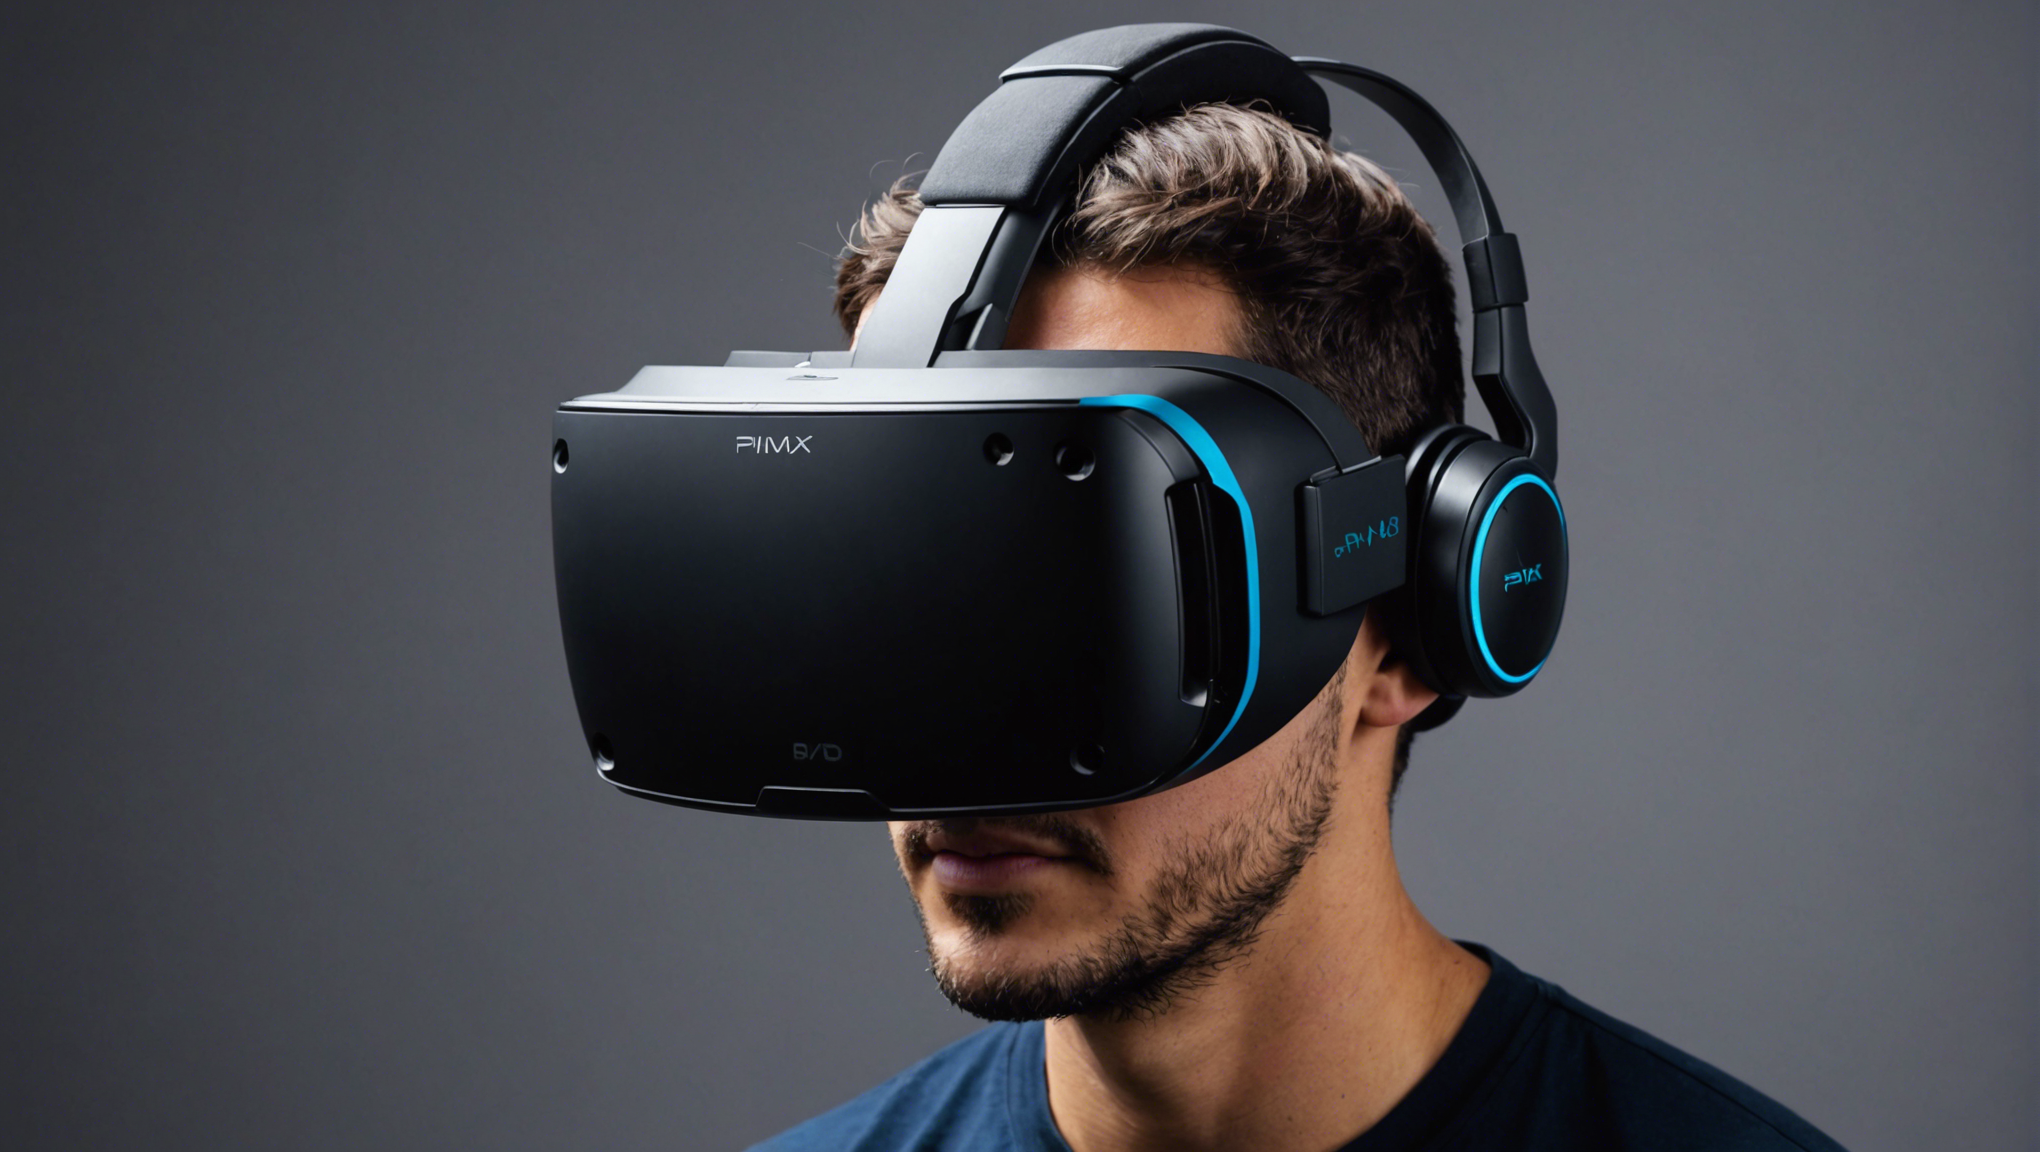 découvrez le casque de réalité virtuelle pimax 8kx, une révolution technologique qui repousse les limites de l'immersion. plongez dans des expériences virtuelles d'une qualité sans précédent grâce à sa résolution incroyable et sa technologie de pointe.